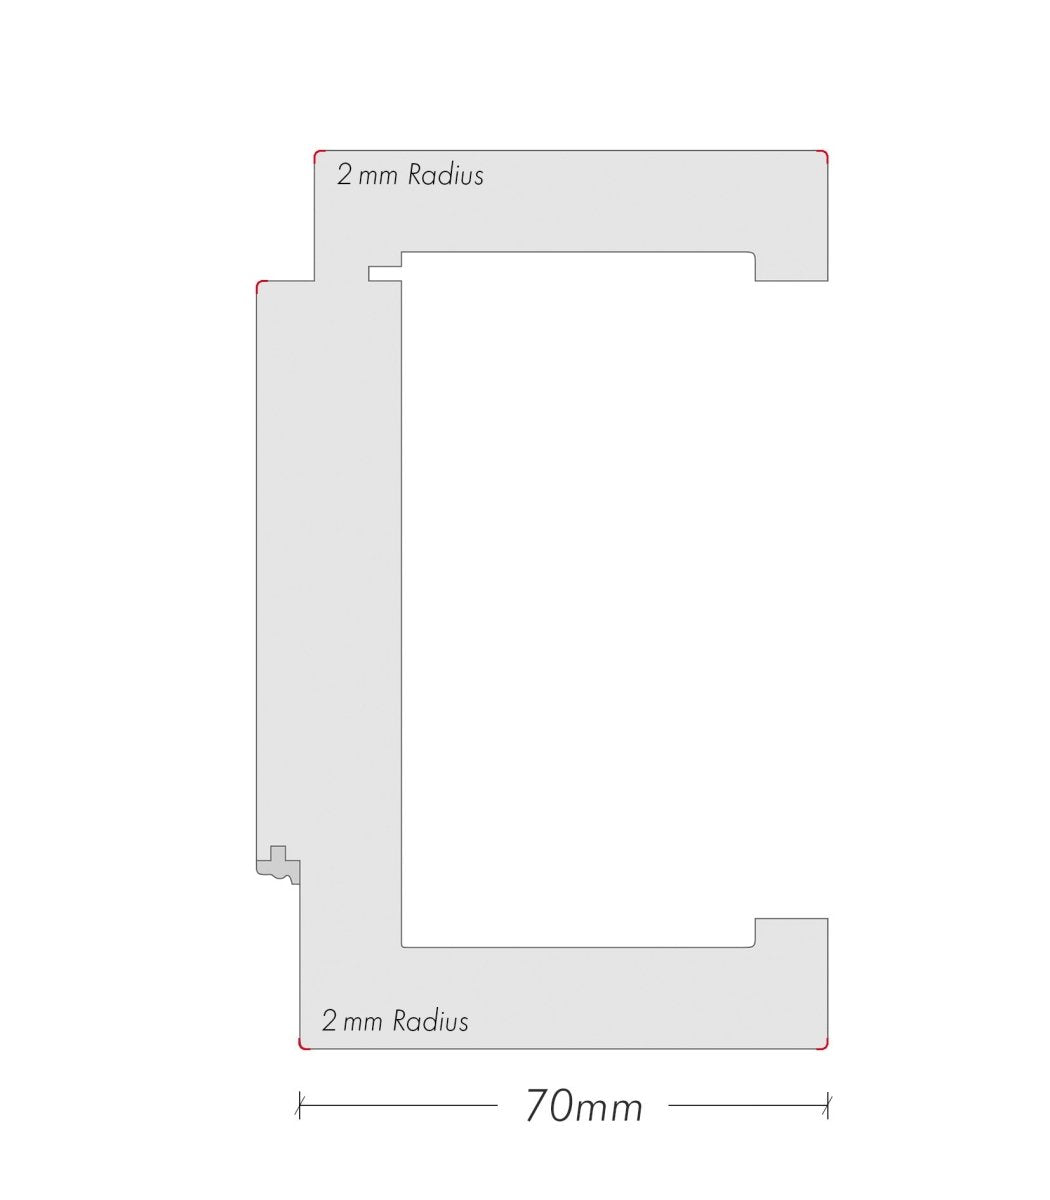 Schiebetür mit Zarge Boho G7 RAL 9003 Design-Innentür - Meine Tür